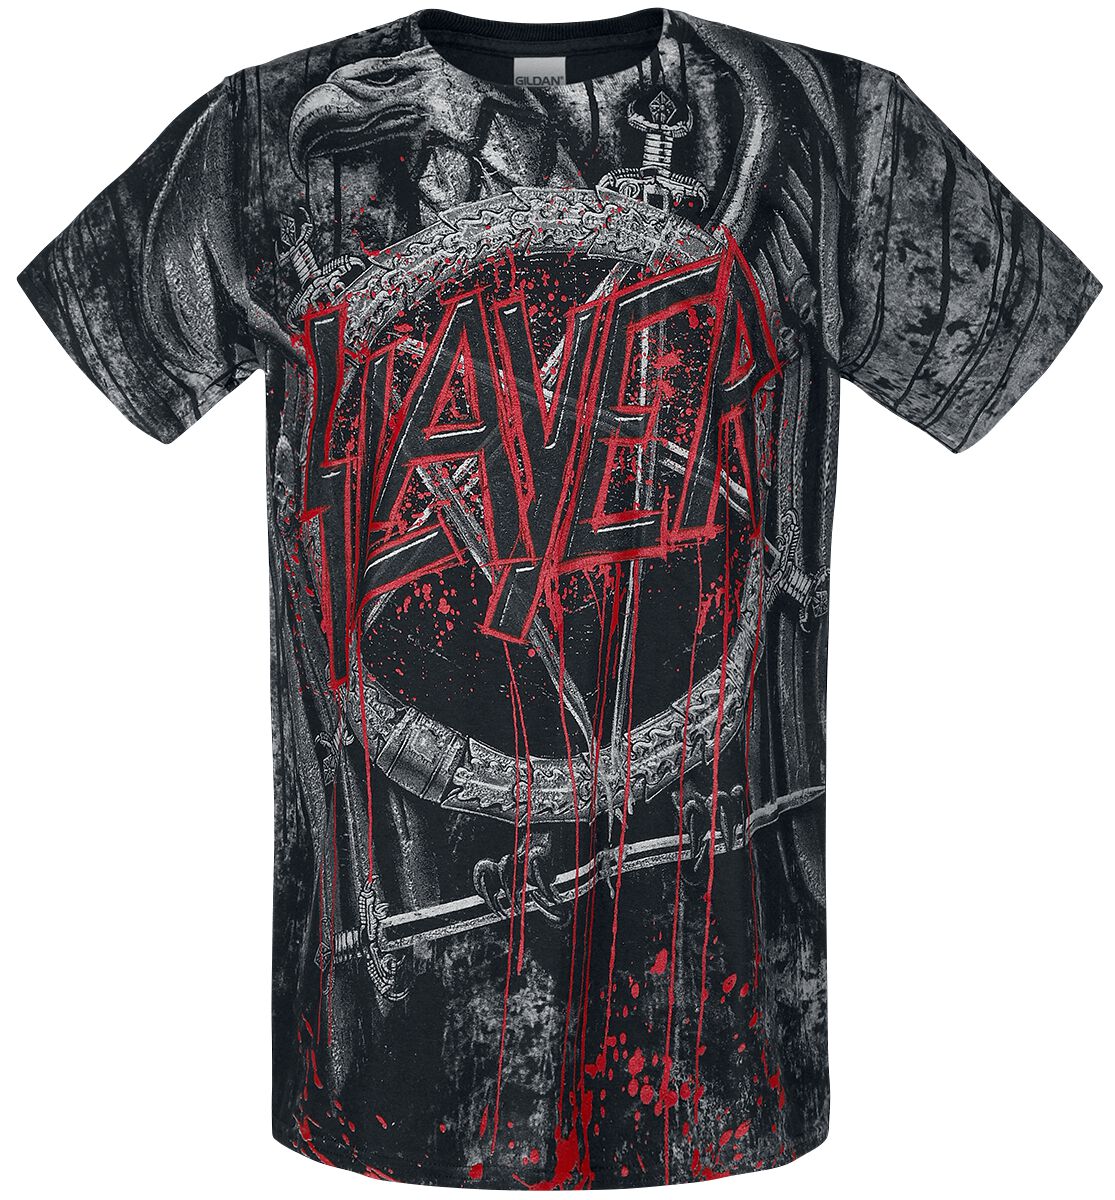 Image of T-Shirt di Slayer - Black Eagle Allover - S a L - Uomo - stampa allover